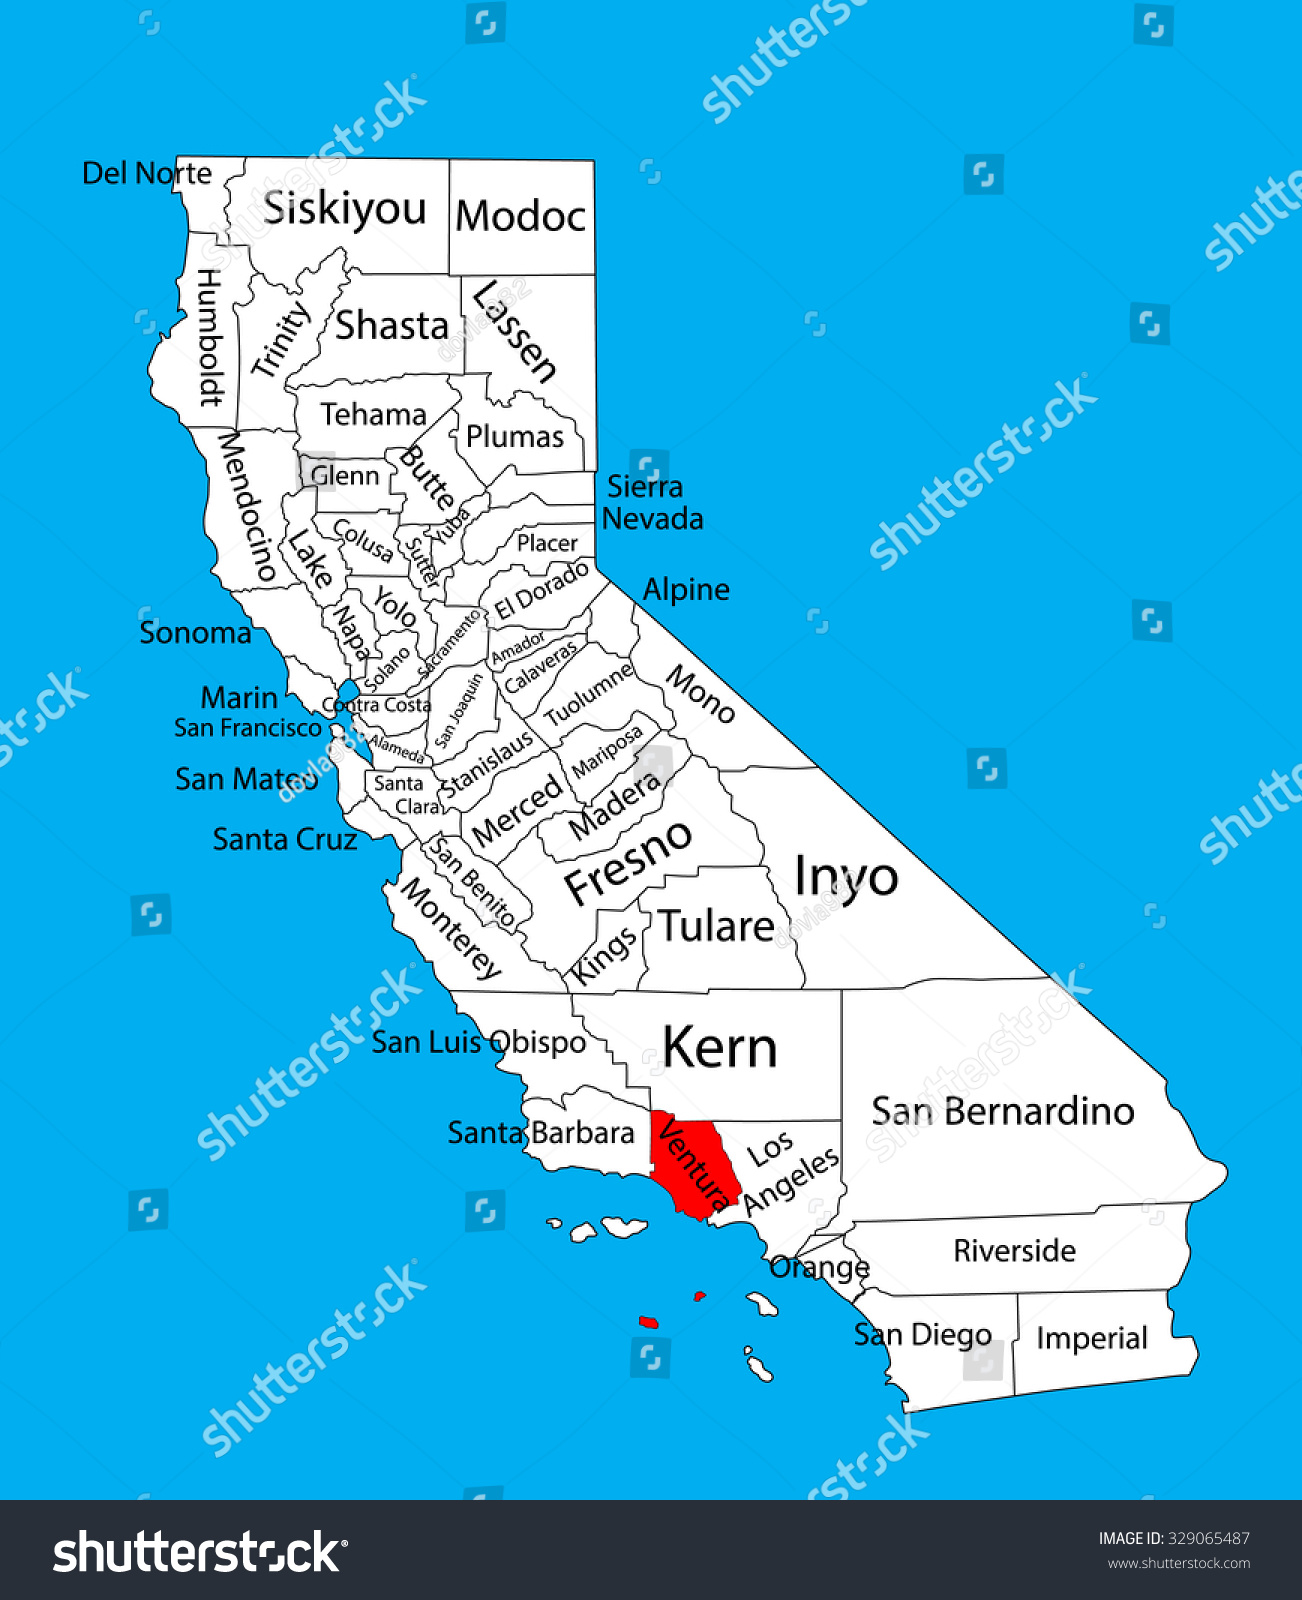 ventura county california map Ventura County California United States America Stock Vector Royalty Free 329065487 ventura county california map